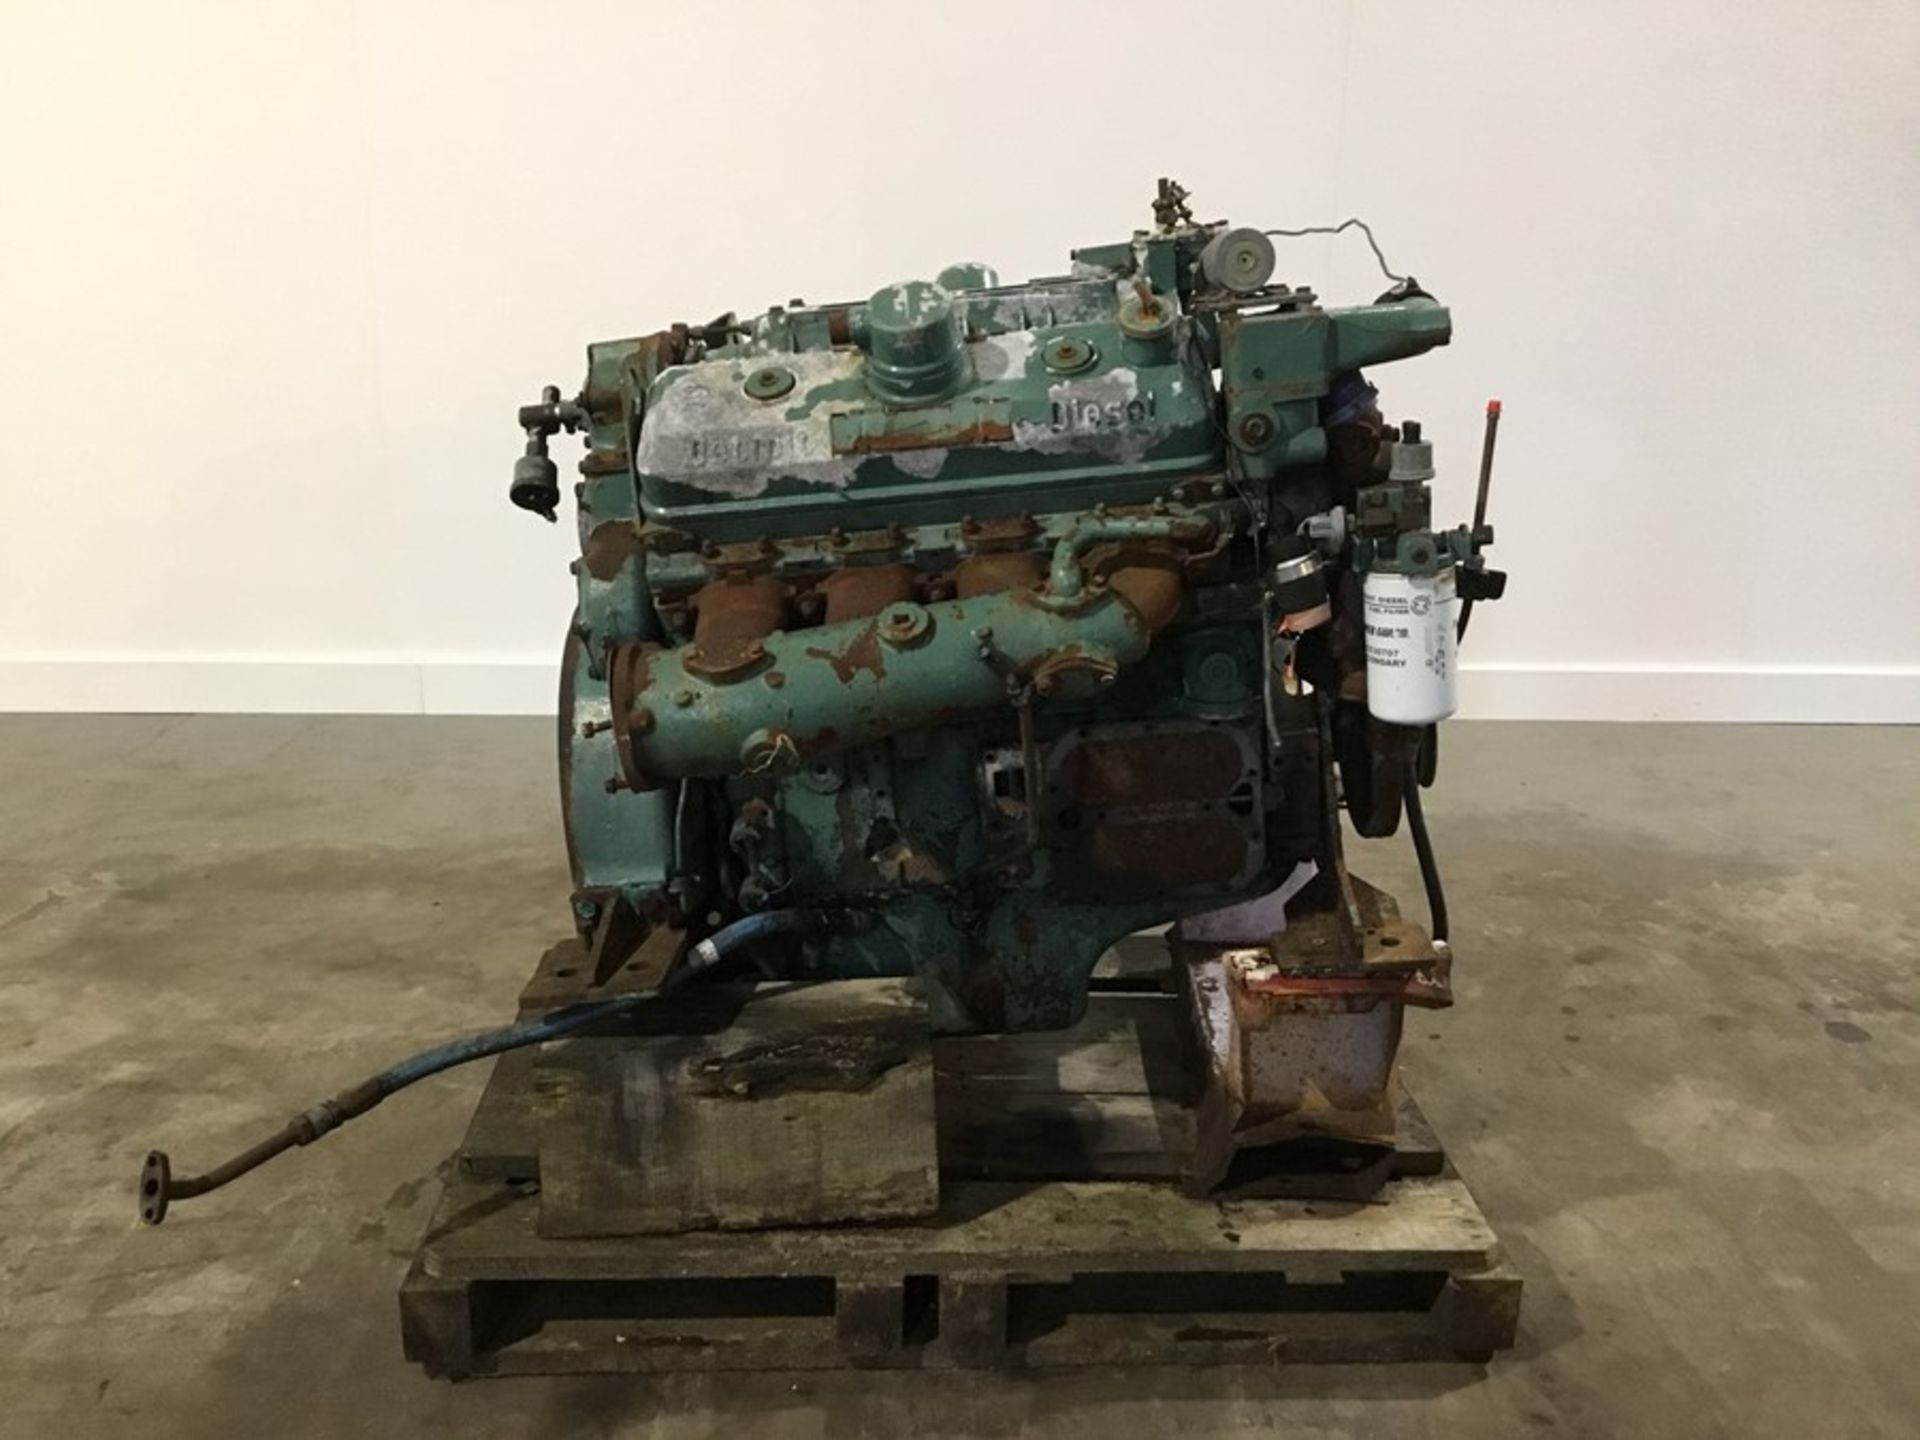 Detroit 8V71 Diesel Engine: Detroit 8v71 v8 Non Turbo Serial Number: 8FW000229*8082-3301 used - Image 2 of 18